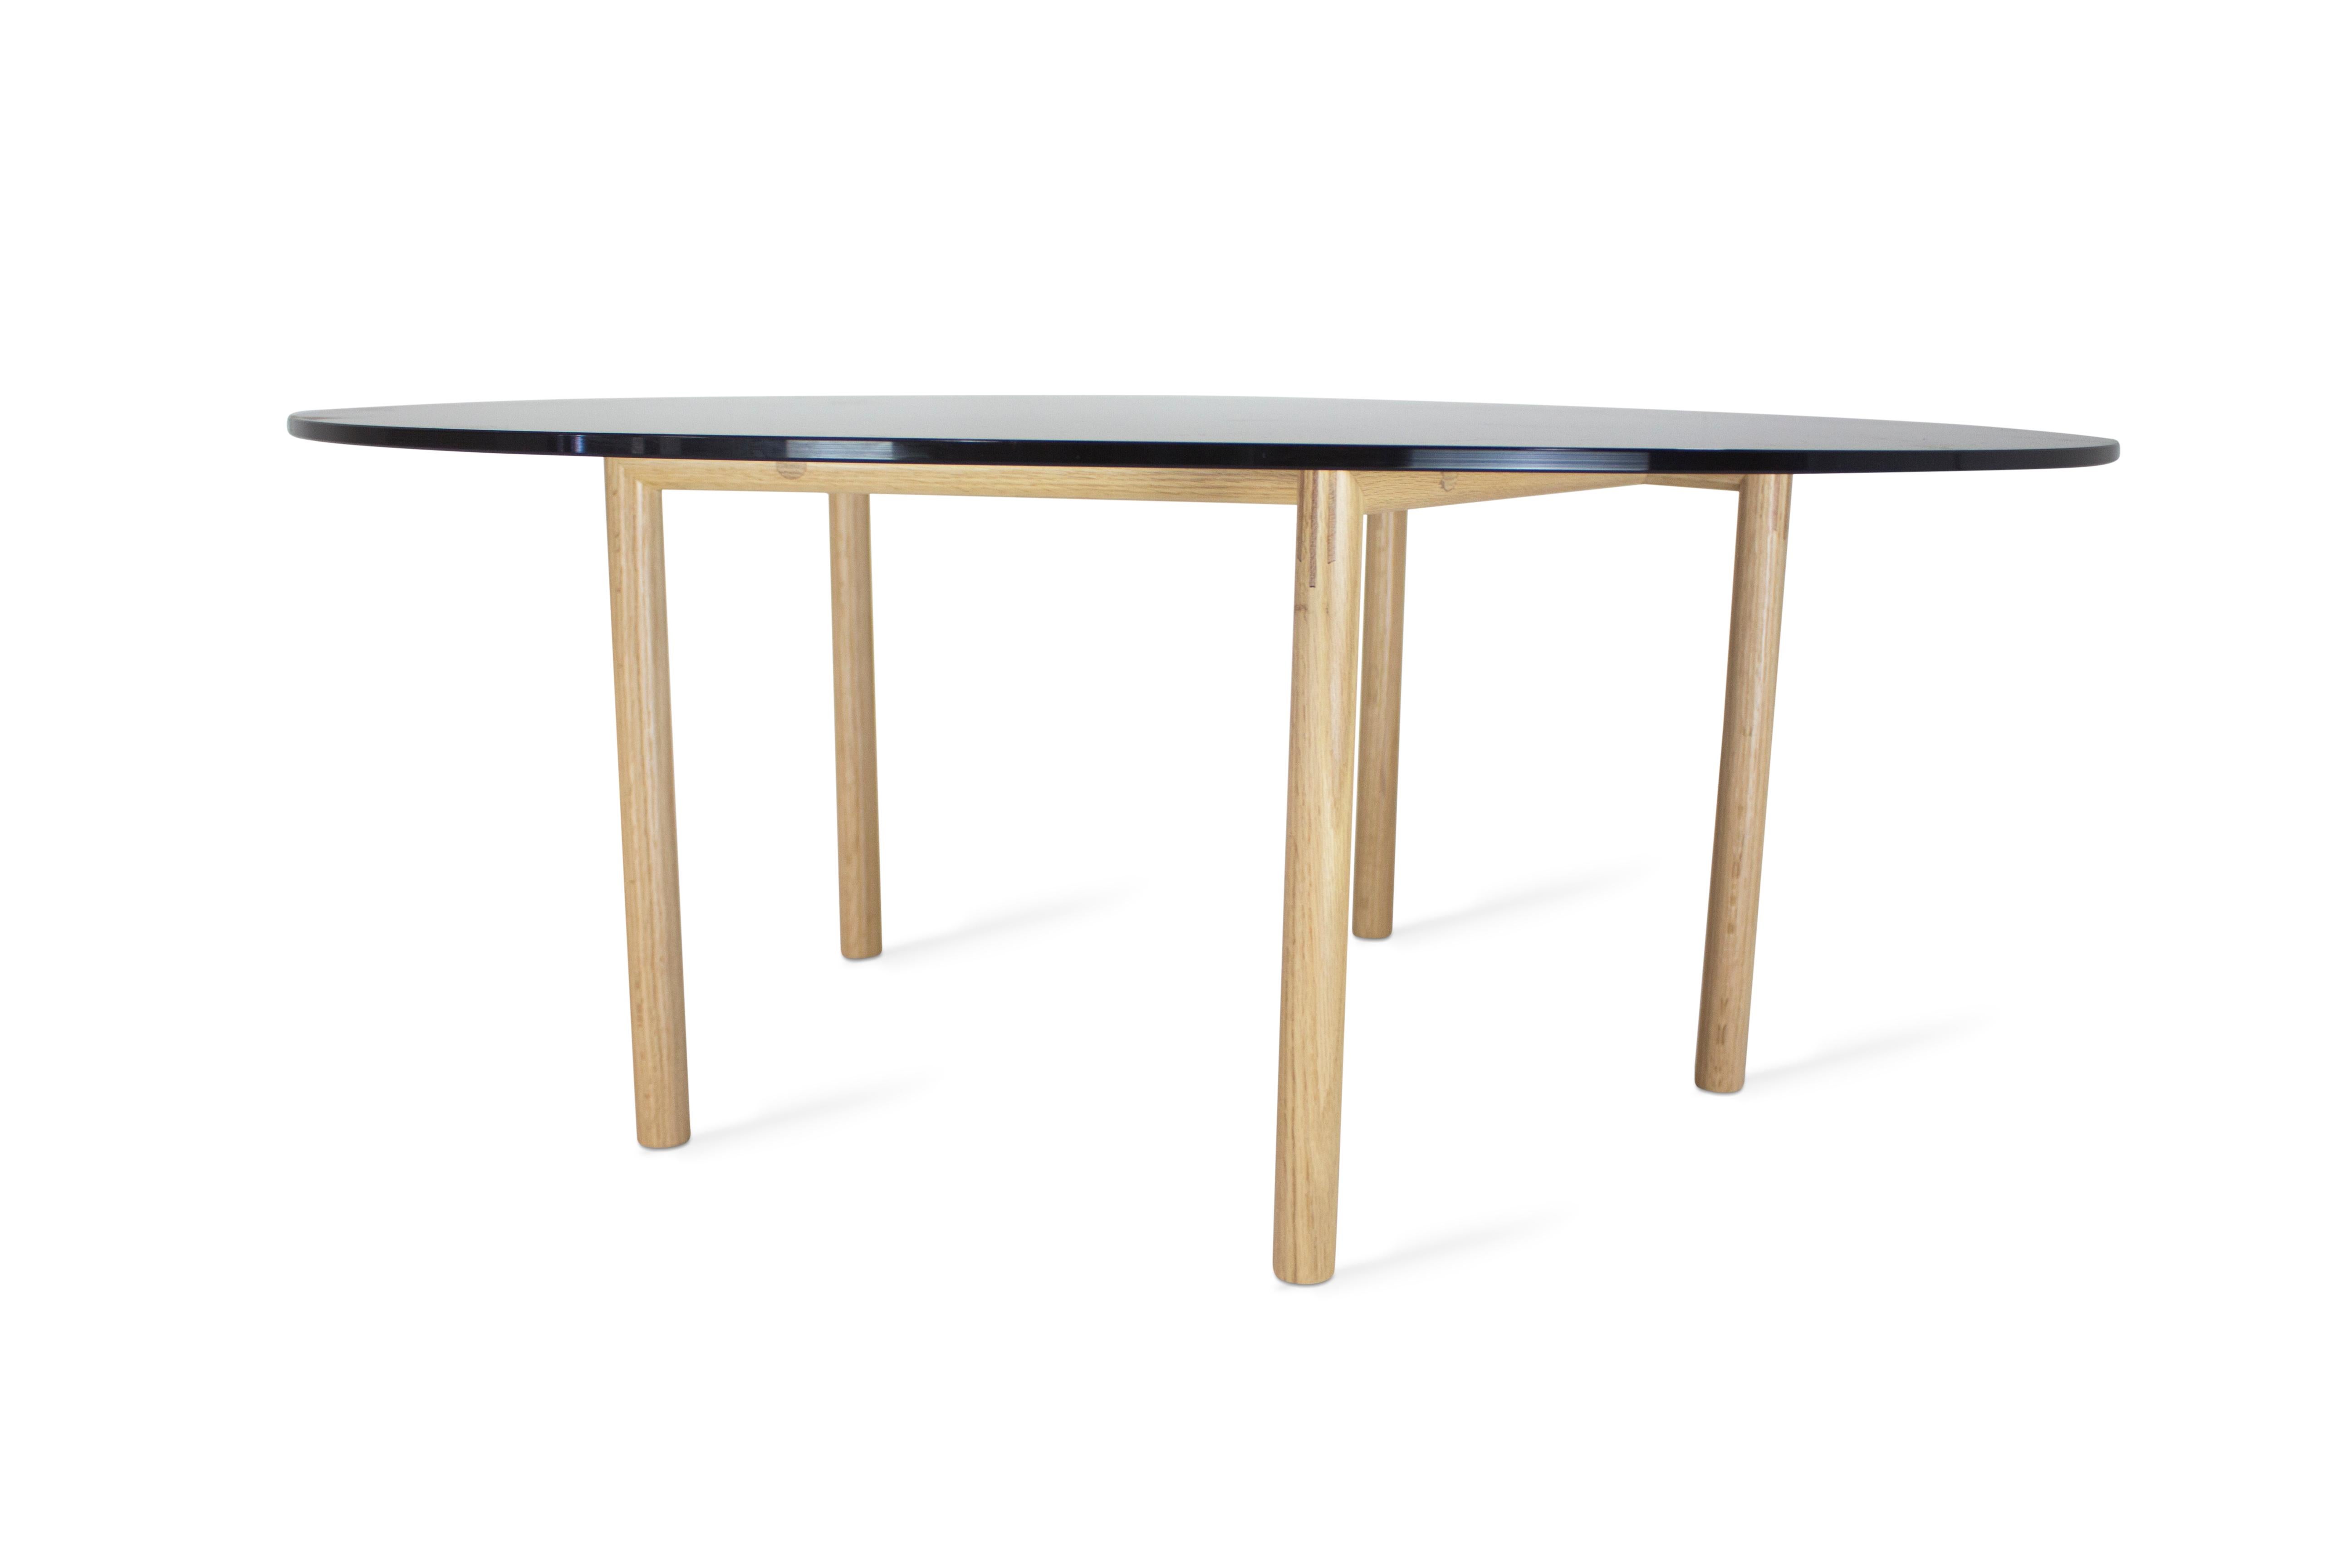 Table basse d'inspiration scandinave. Table basse simple, minimale et élégante.
 